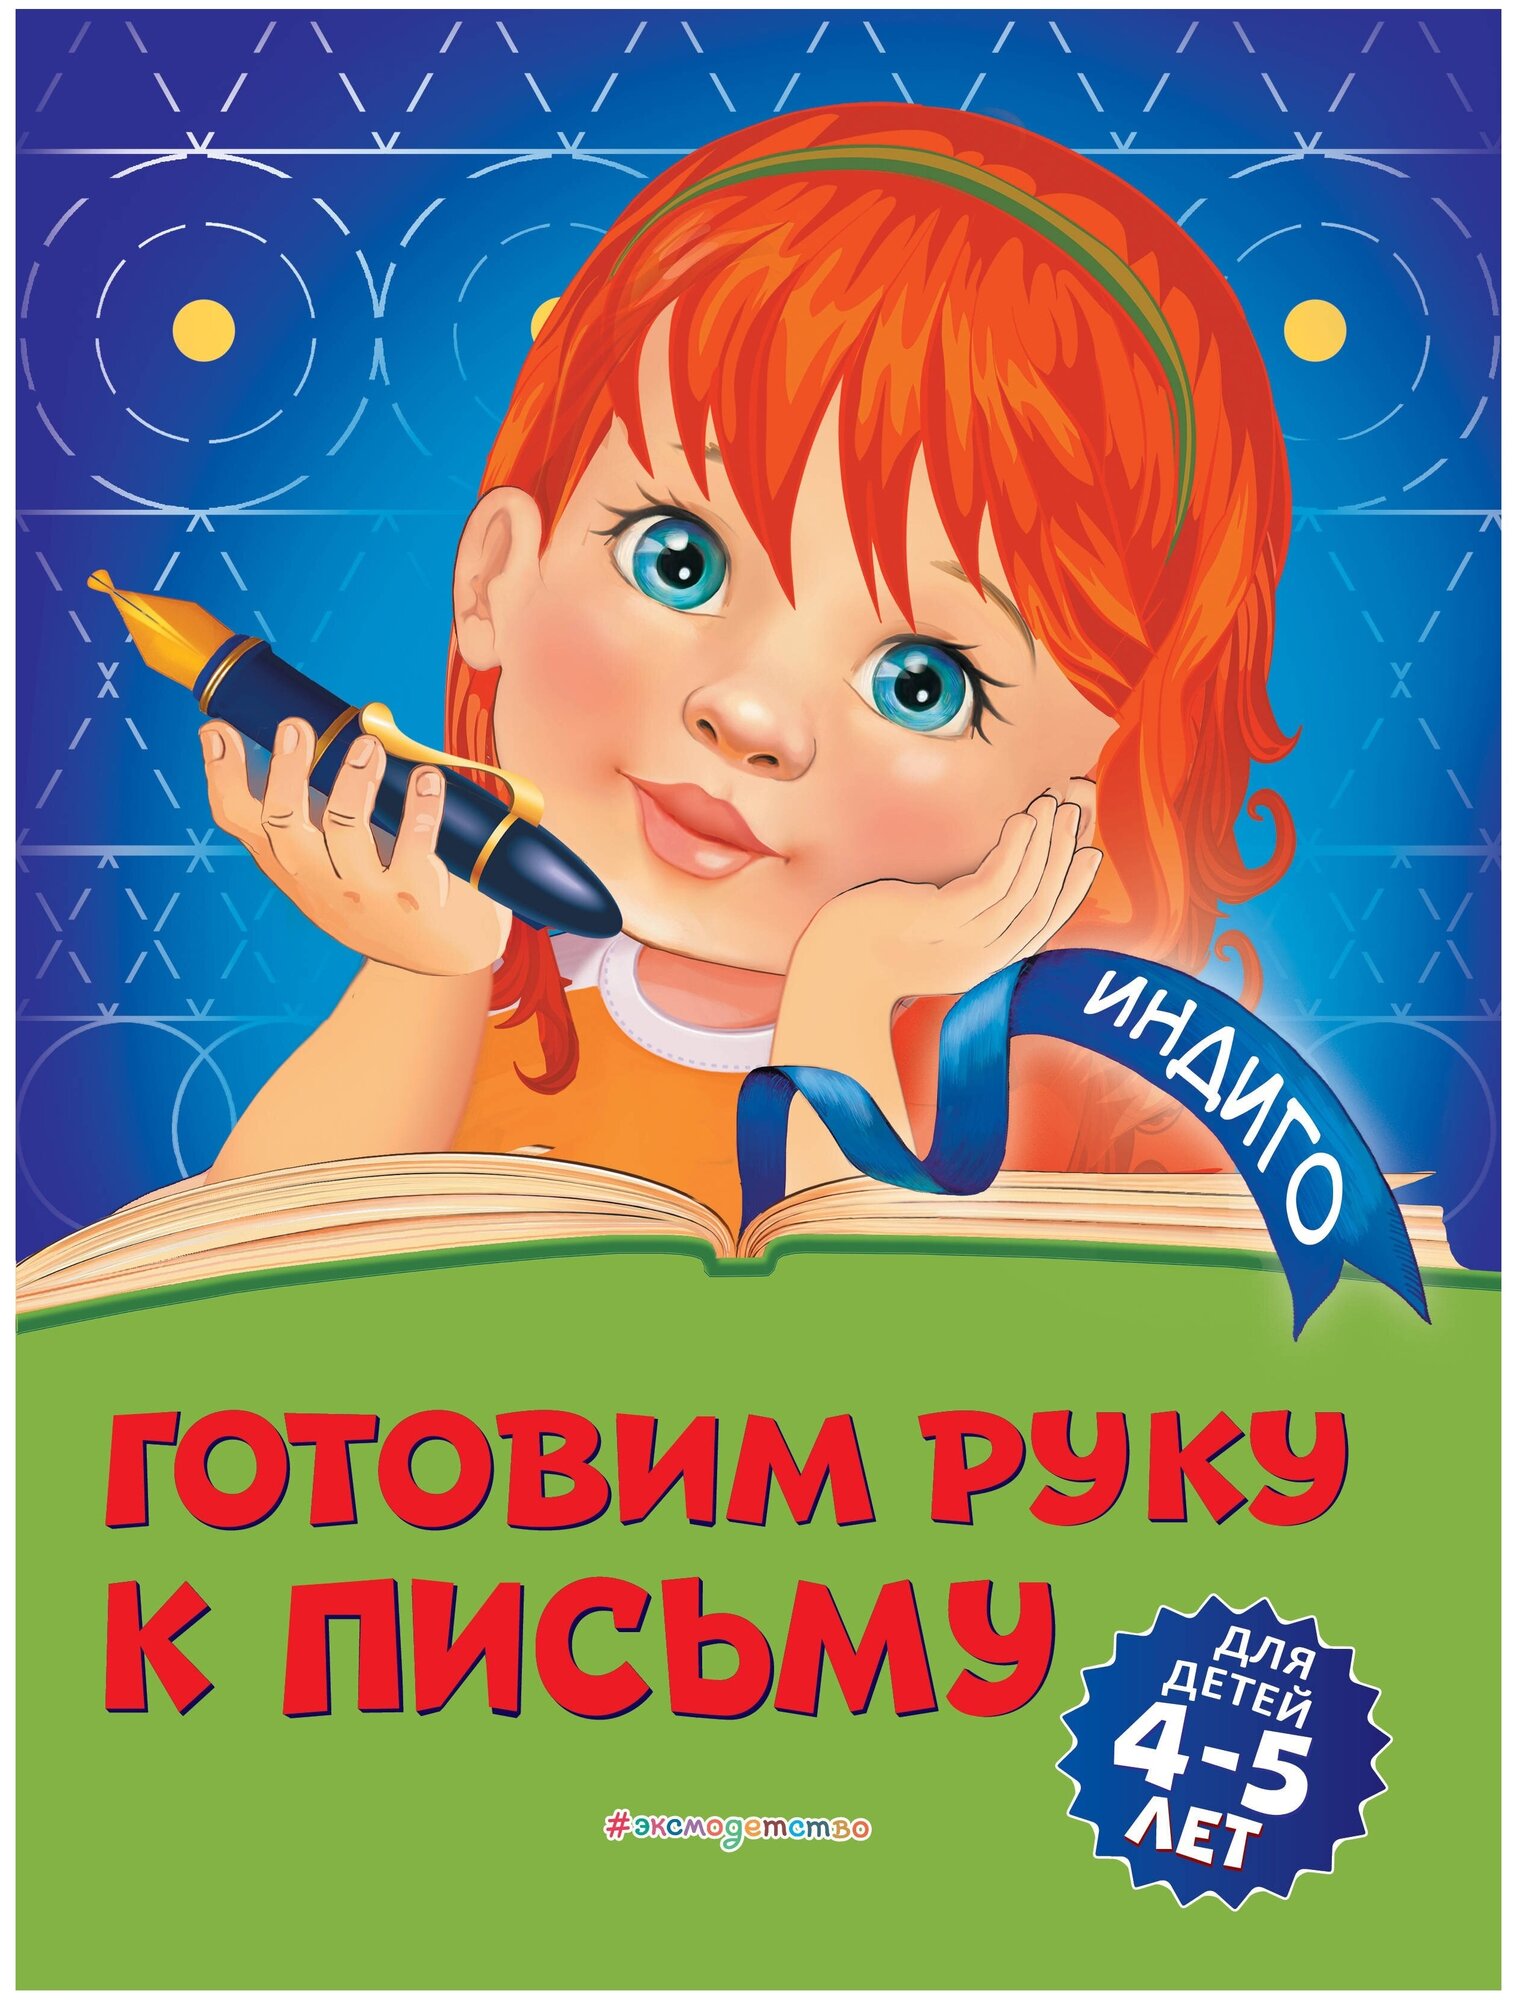 Пономарева А.В. "Индиго. Готовим руку к письму: для детей 4-5 лет"